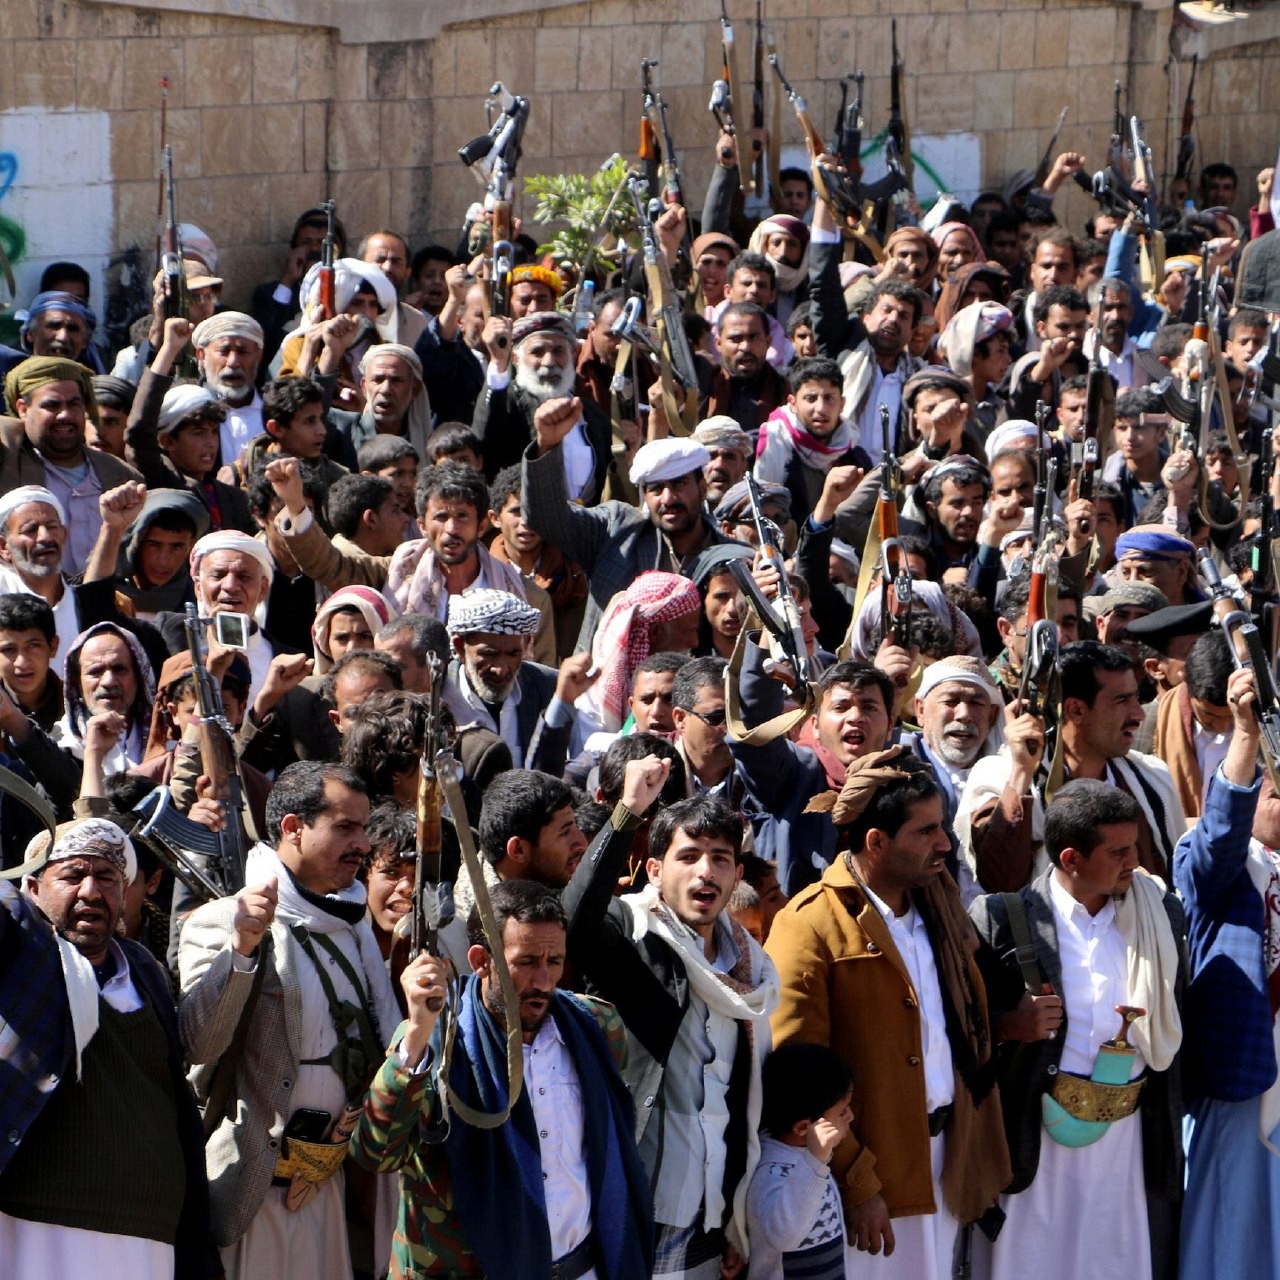 قوات العمالقة كبدت الحوثيين خسائر فادحة في الأرواح والعتاد، حيث سقط مئات القتلى والجرحى في صفوف الحوثيين